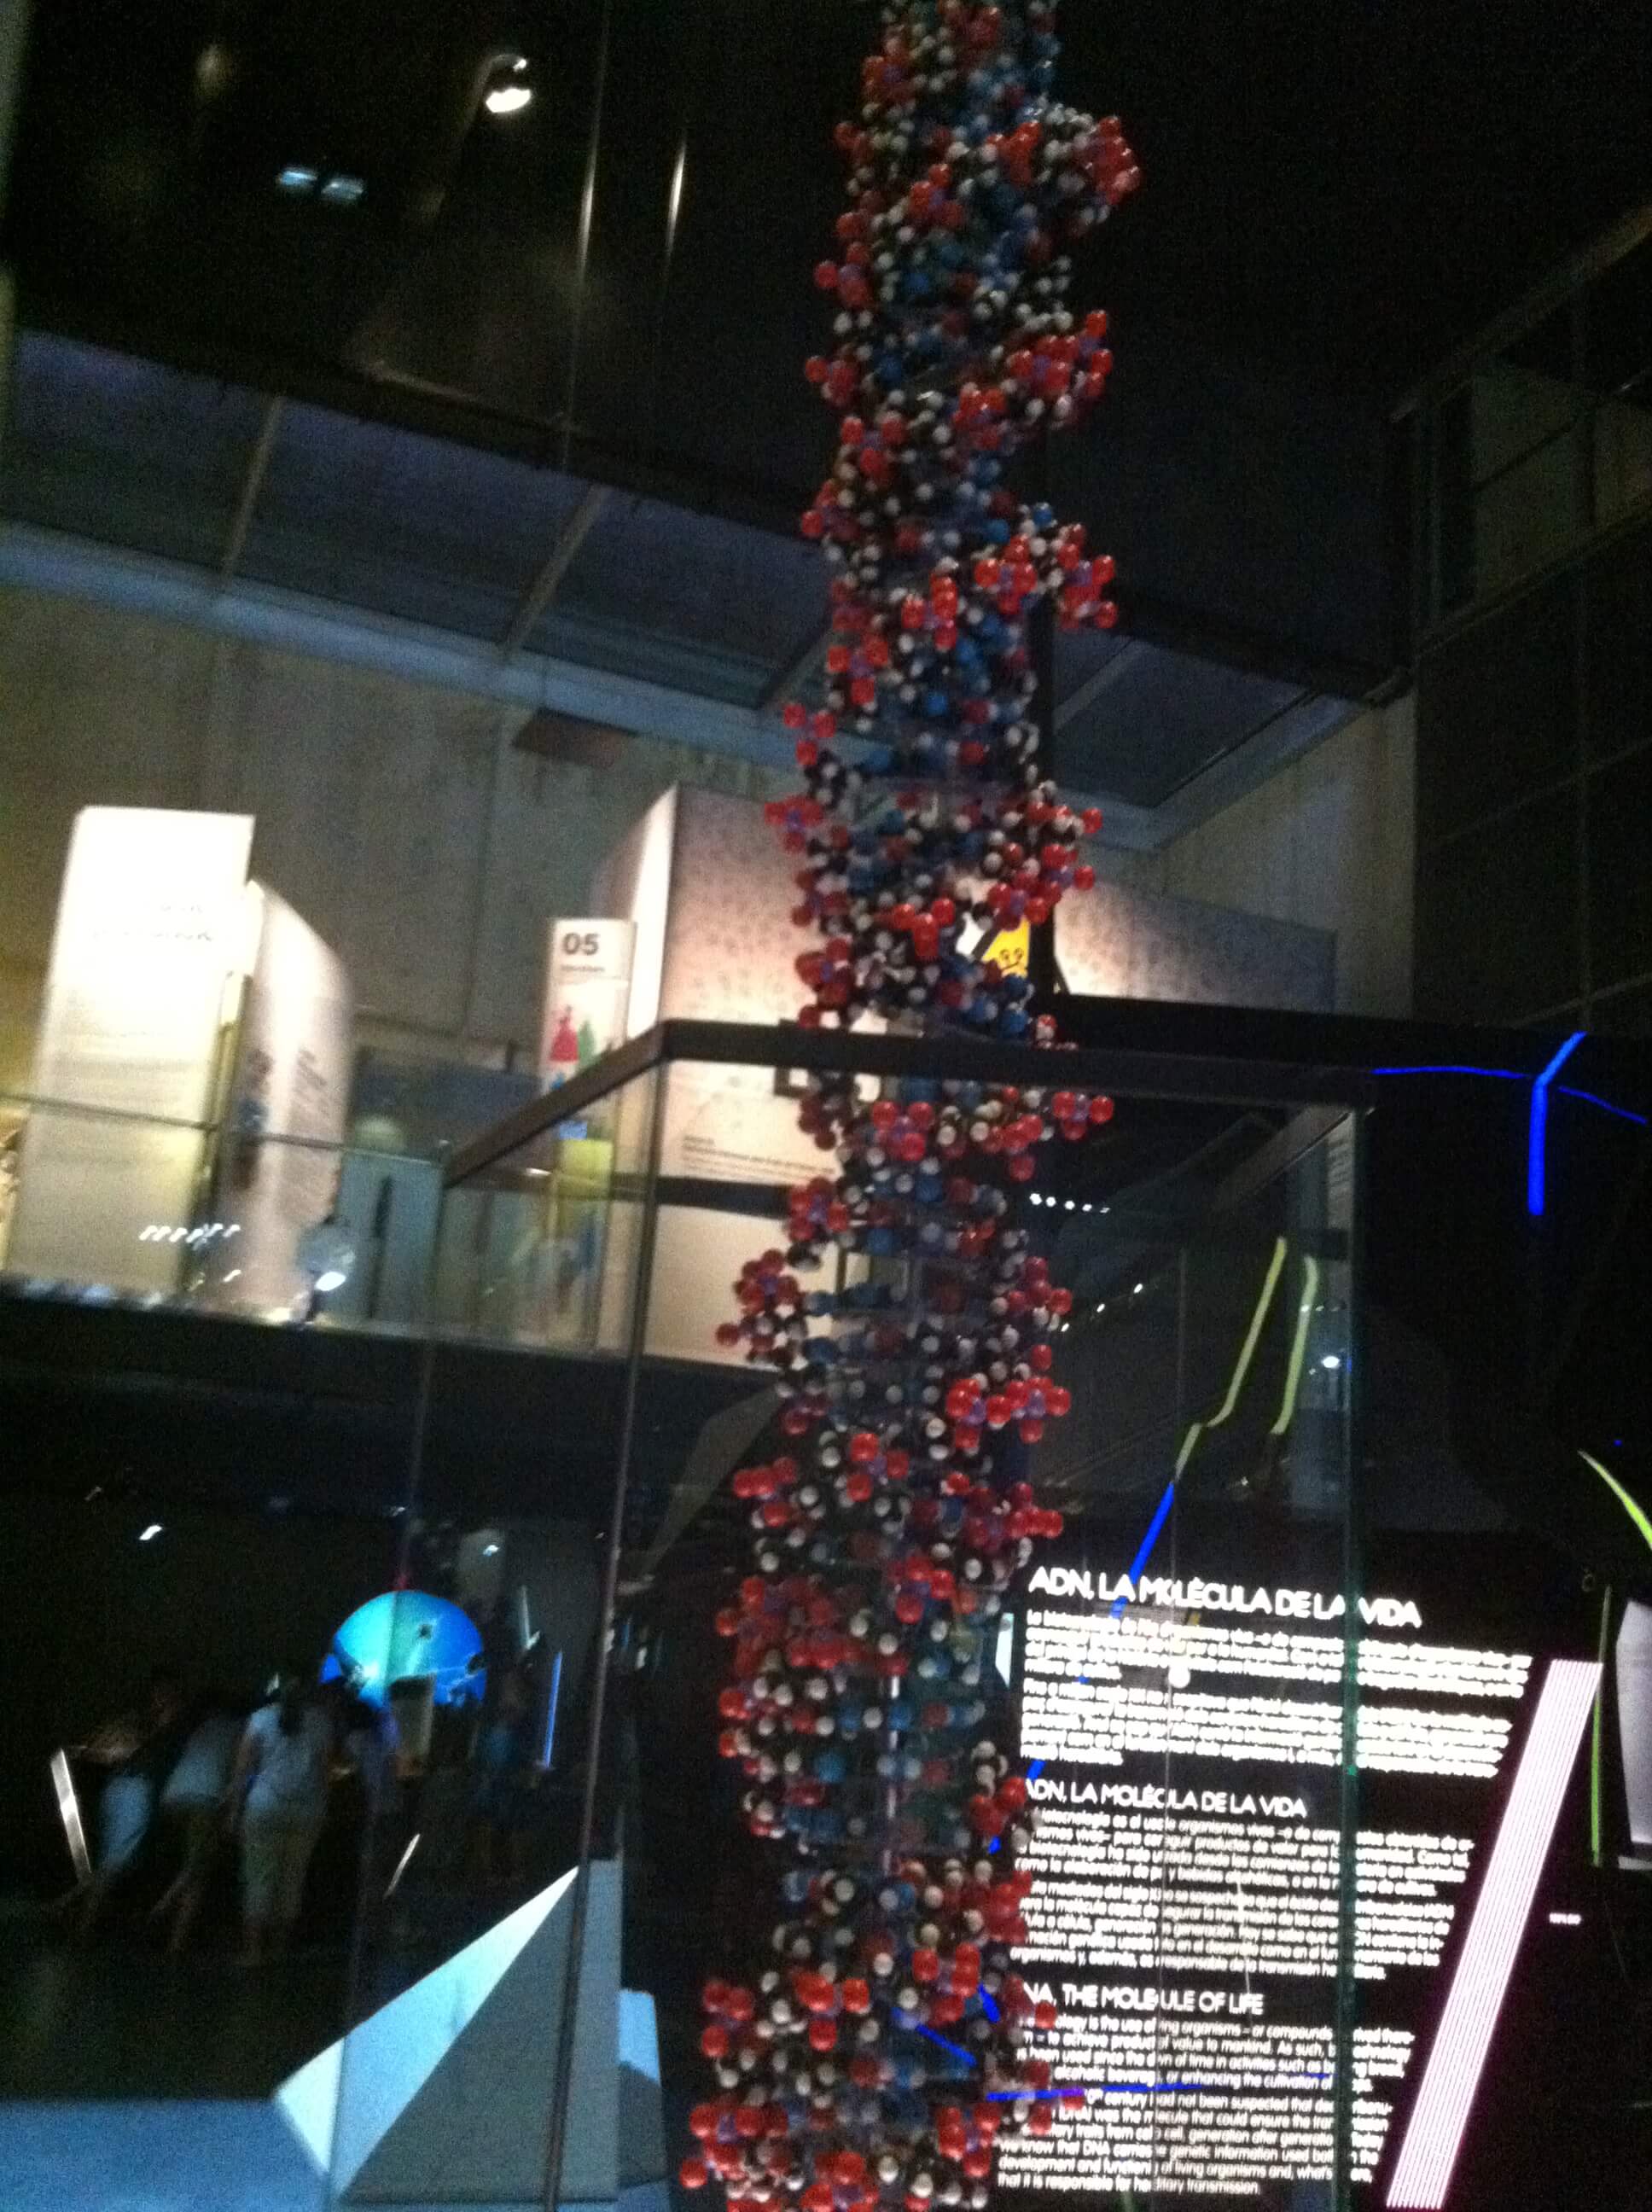 نموذج لجزيء الحمض النووي في متحف العلوم في برشلونة. الصورة: آفي بيليزوفسكي